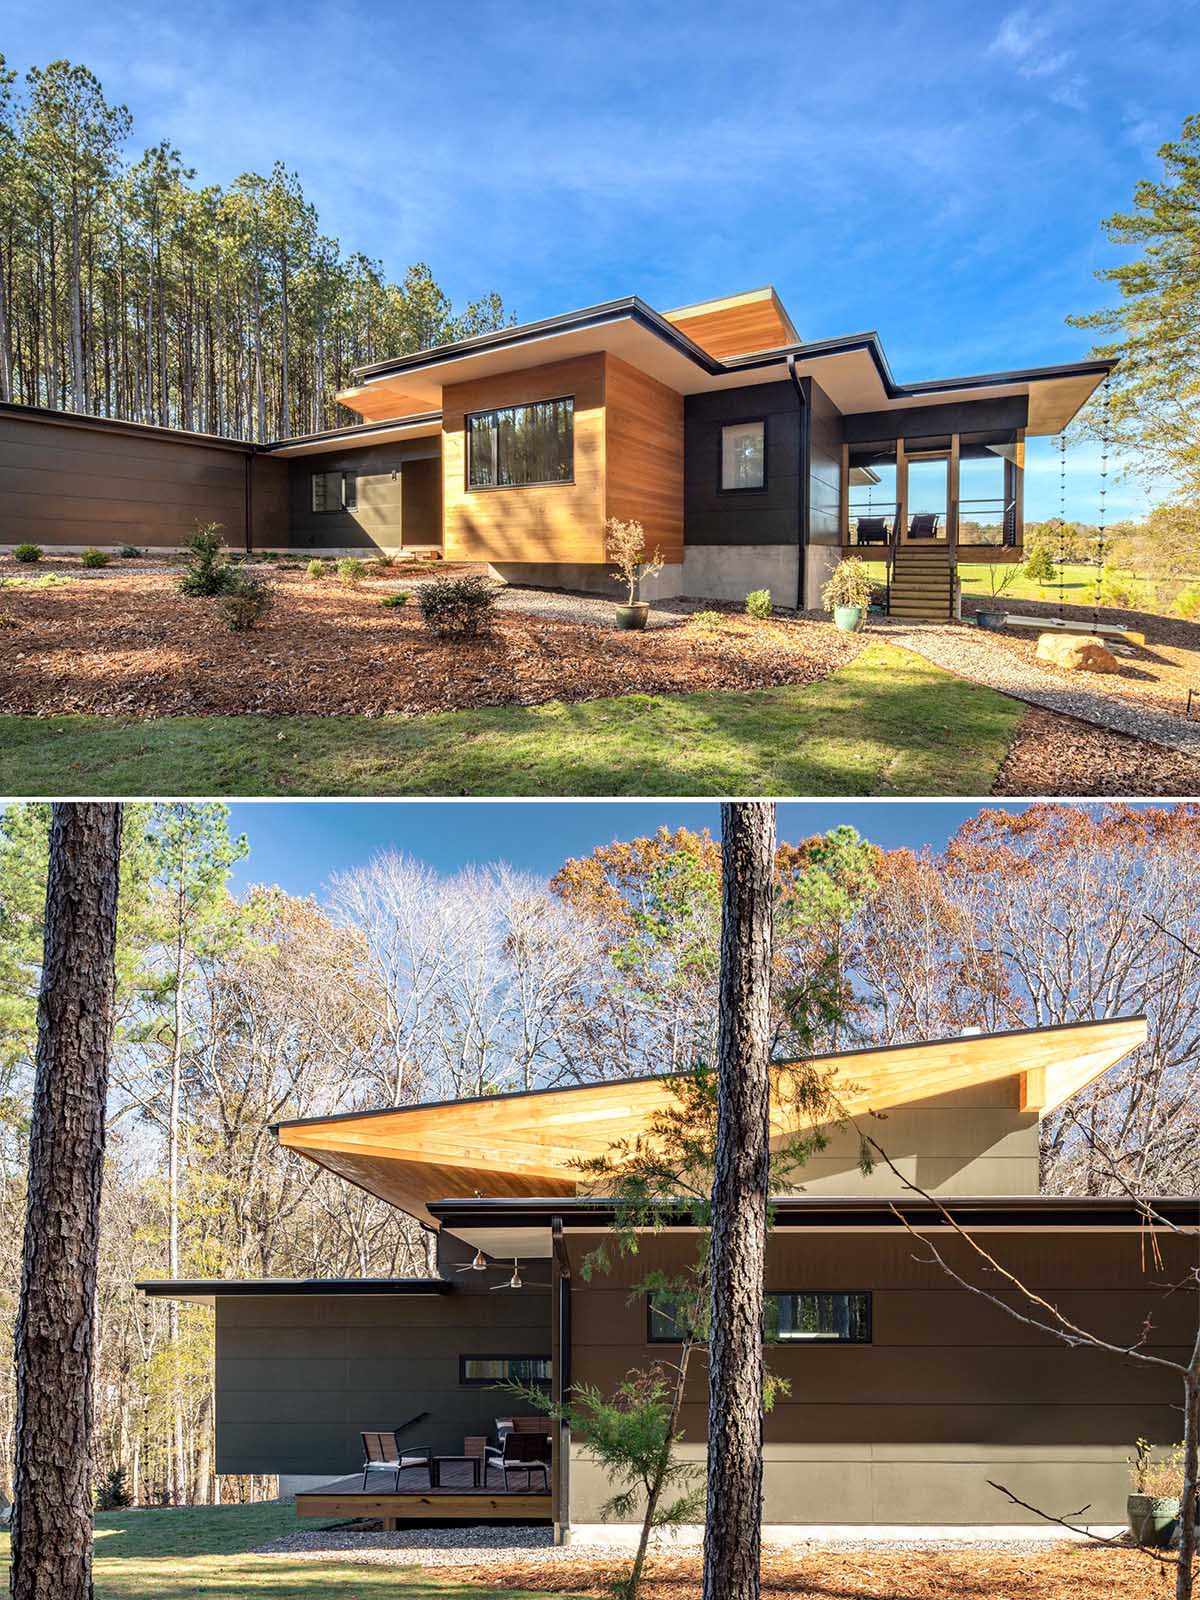 Современный дом с деревянными элементами и крышей для солнечных батарей.